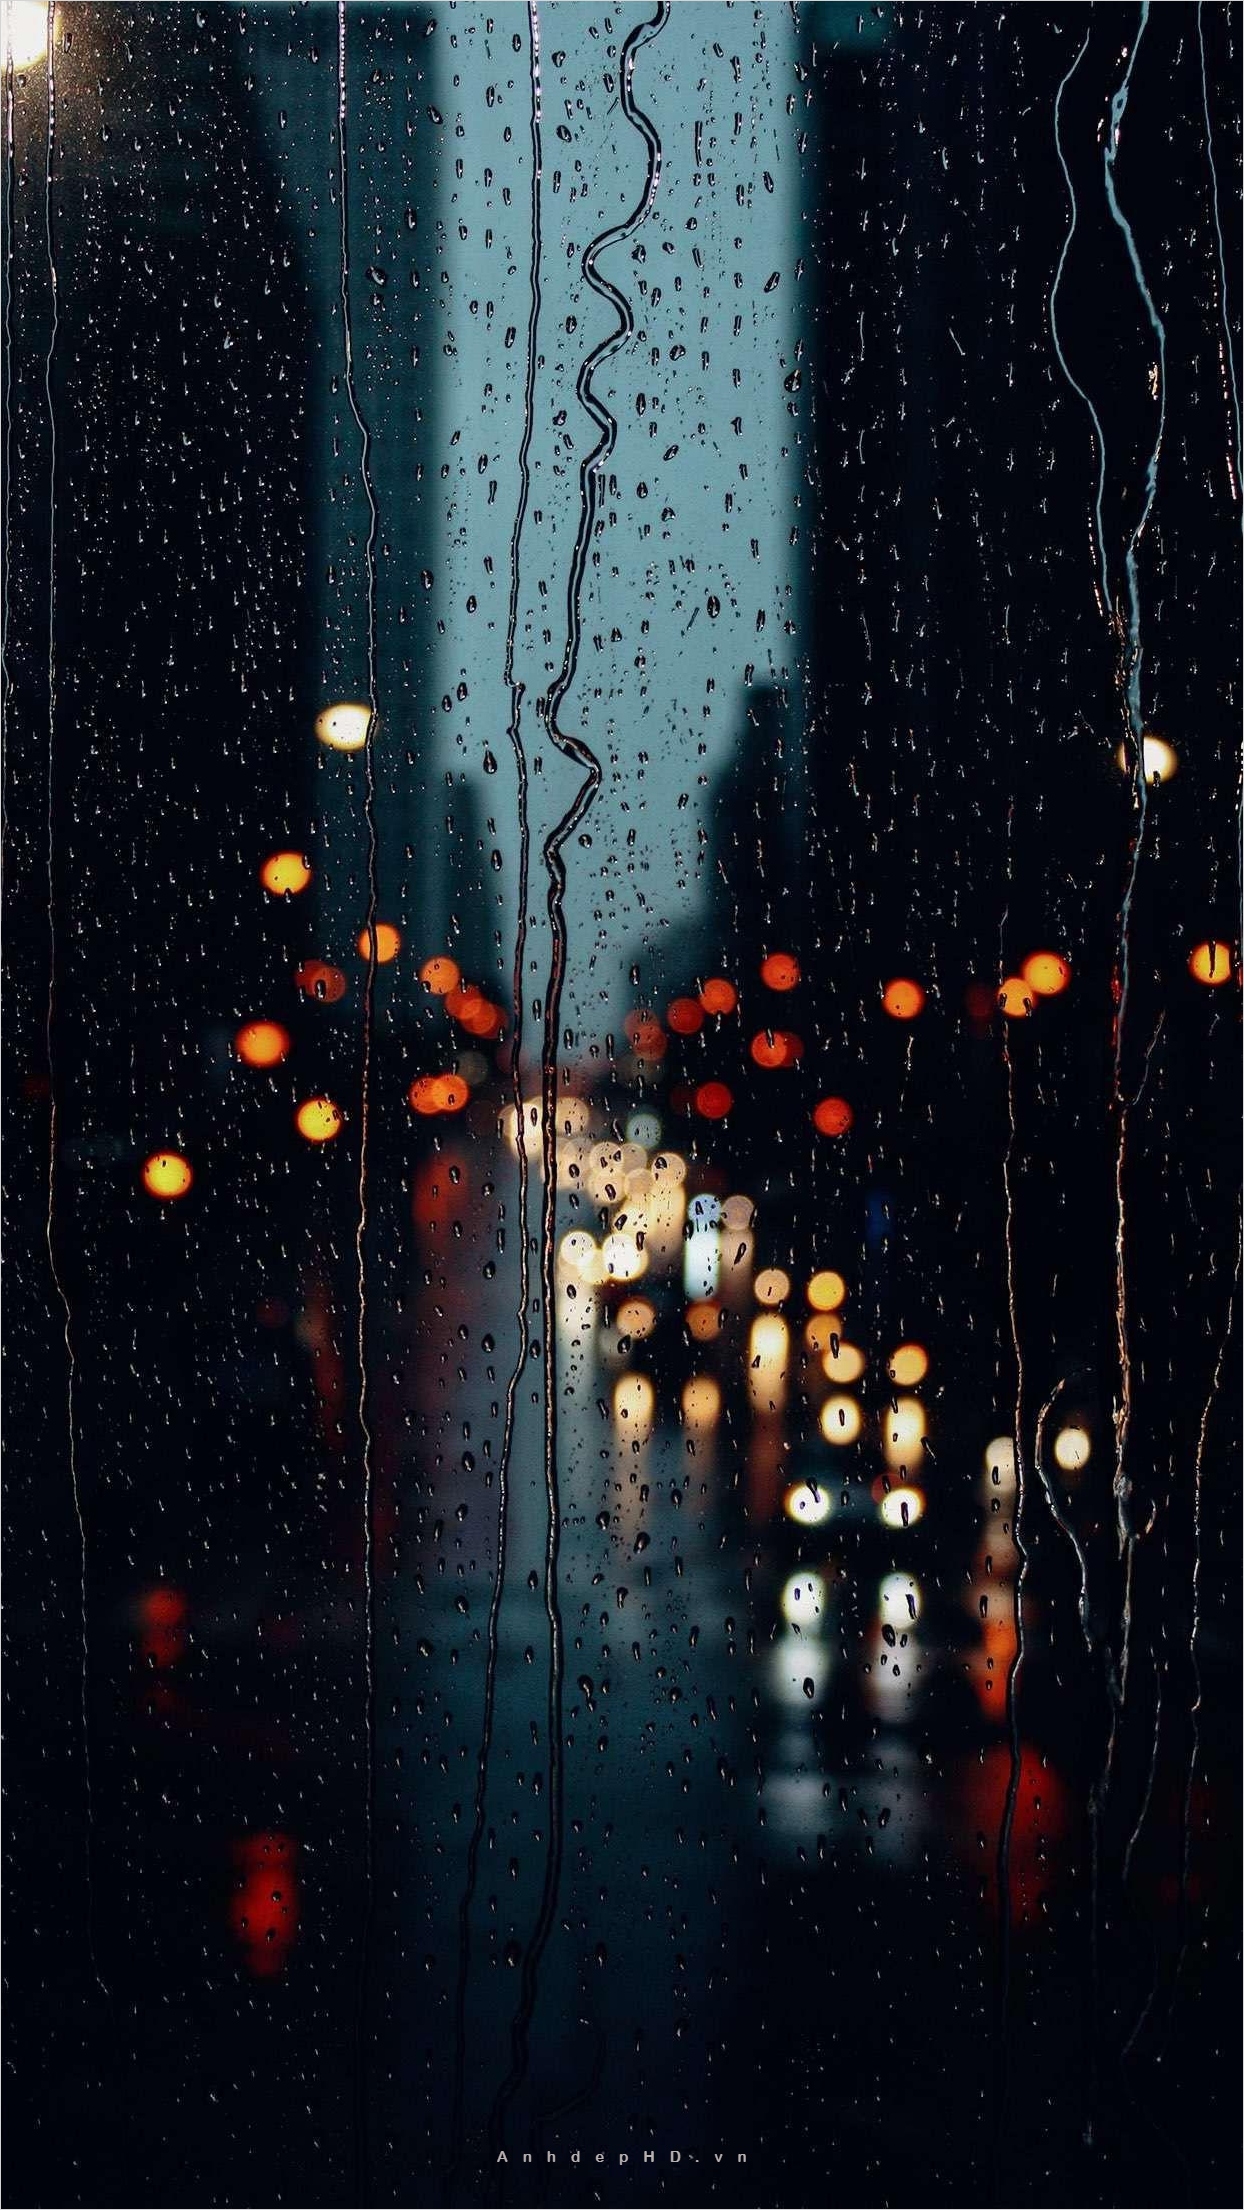 Hình cảnh mưa đêm buồn đầy cảm xúc, phù hợp với tâm trạng của bạn